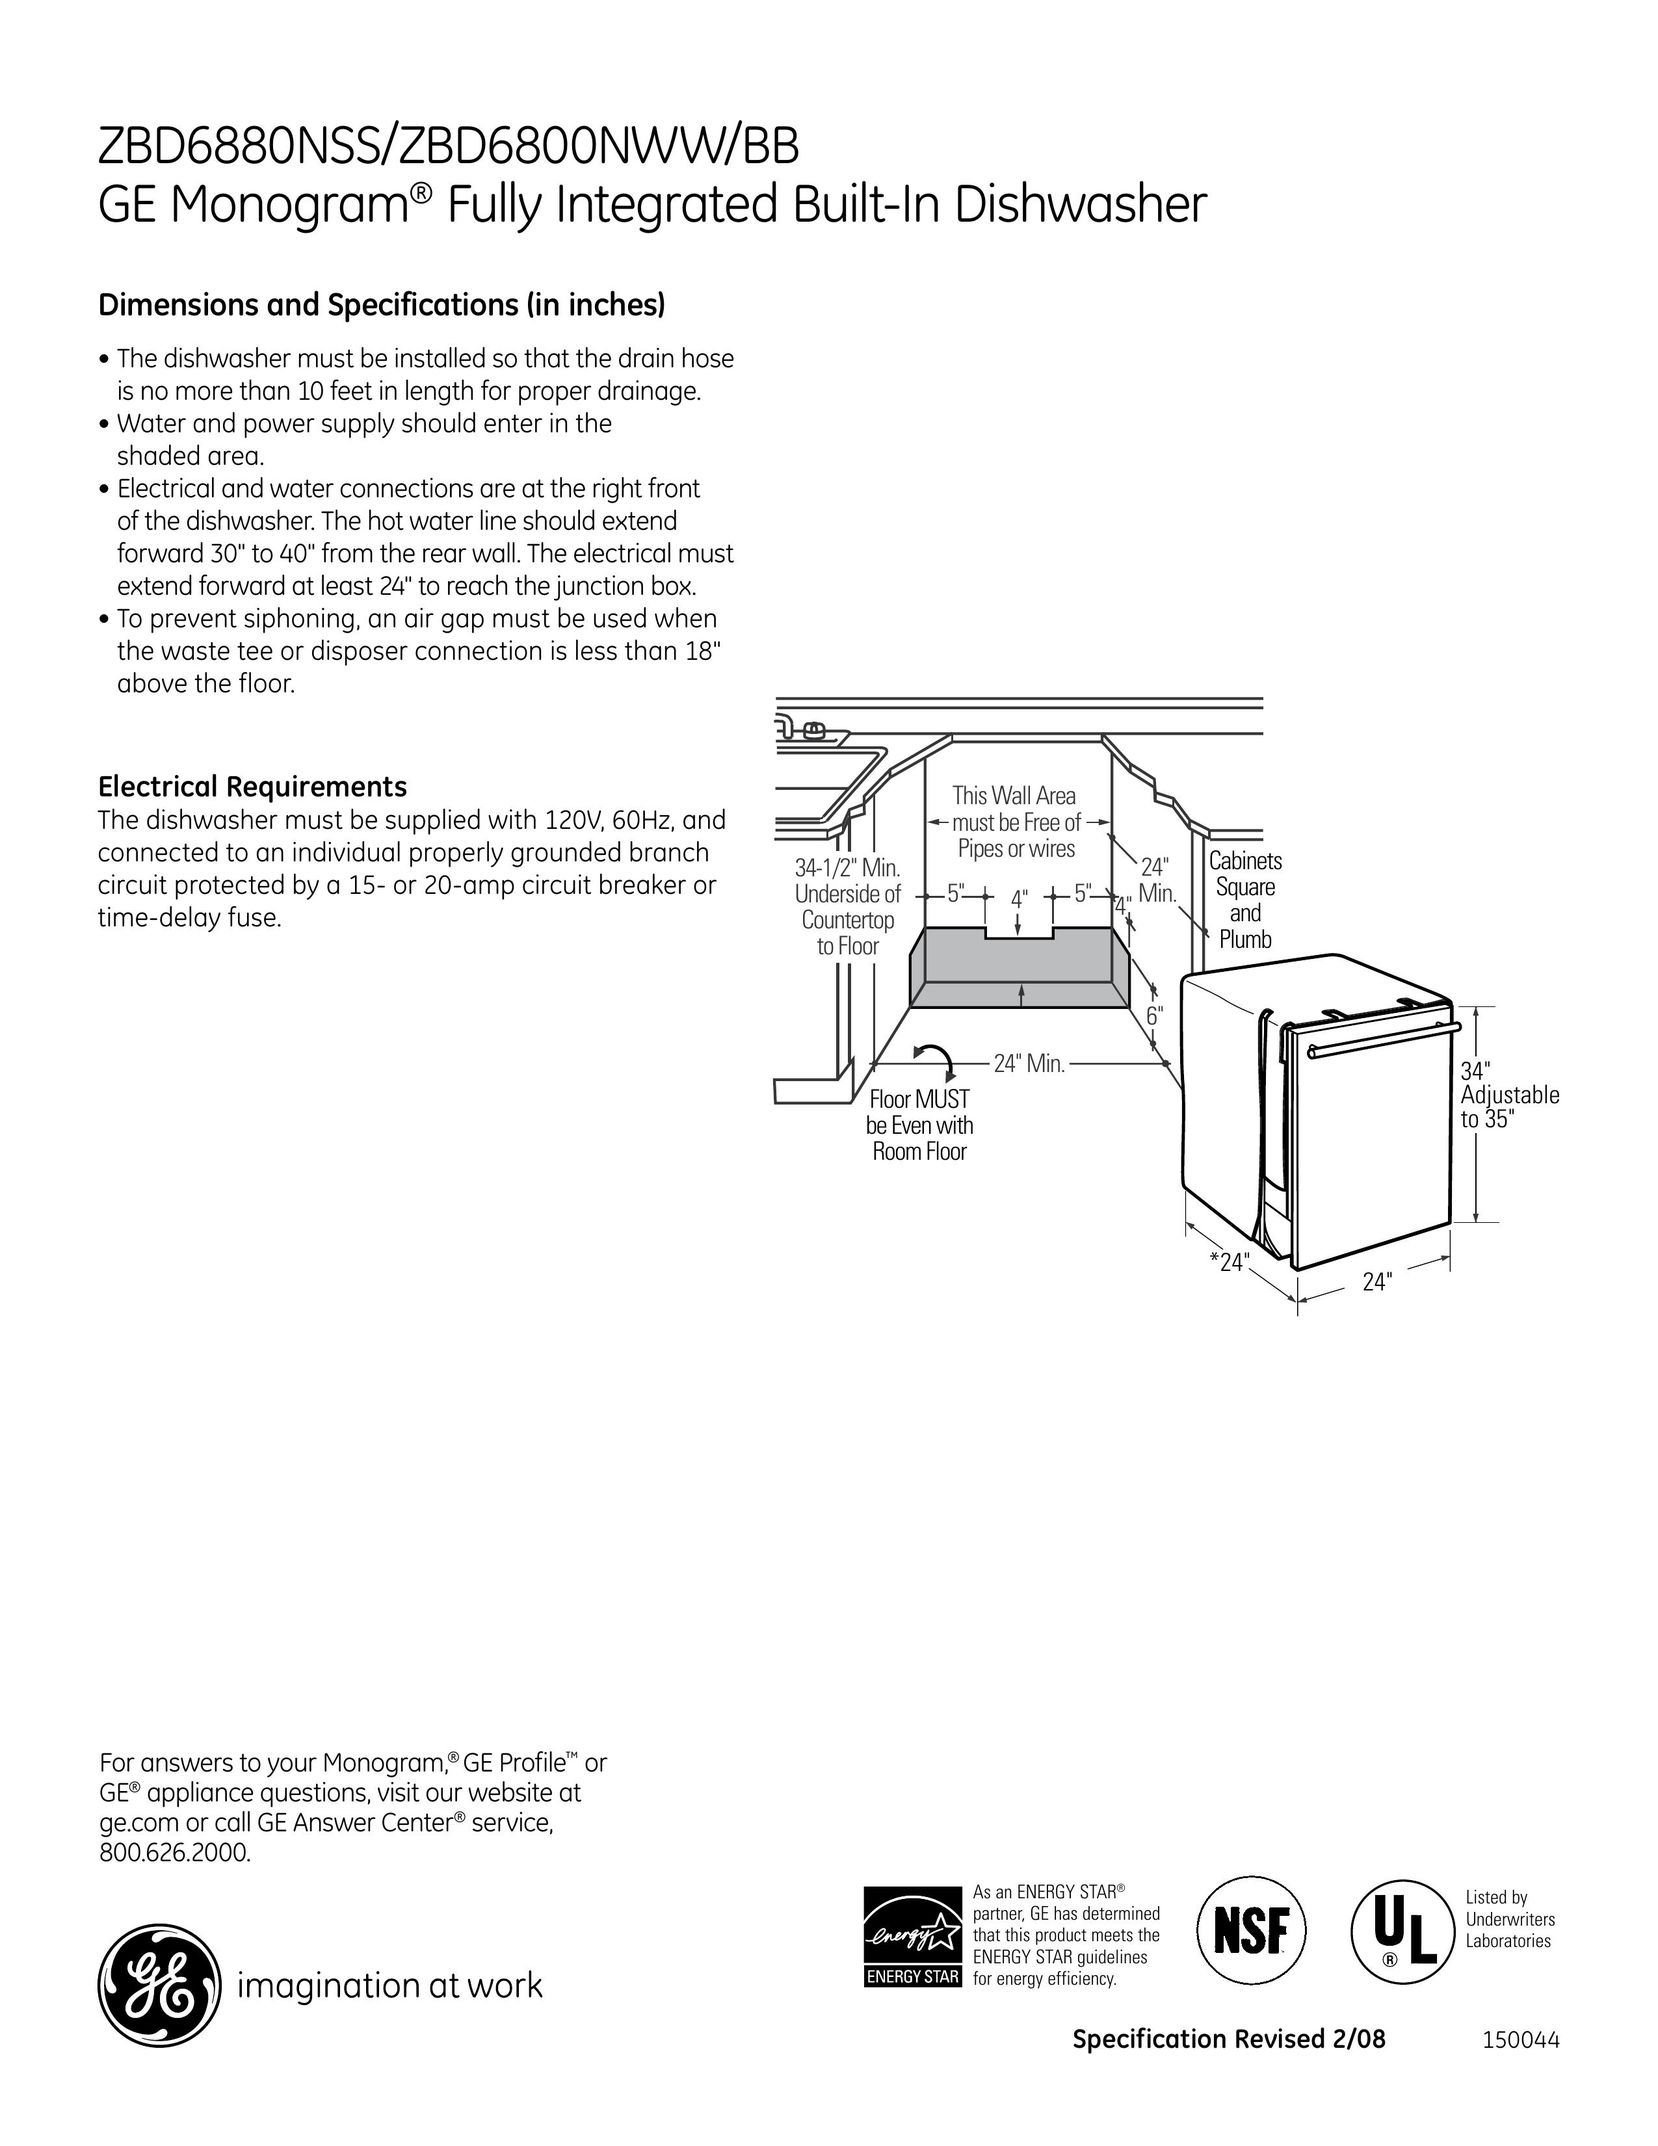 GE Monogram zbd6800NWW Dishwasher User Manual